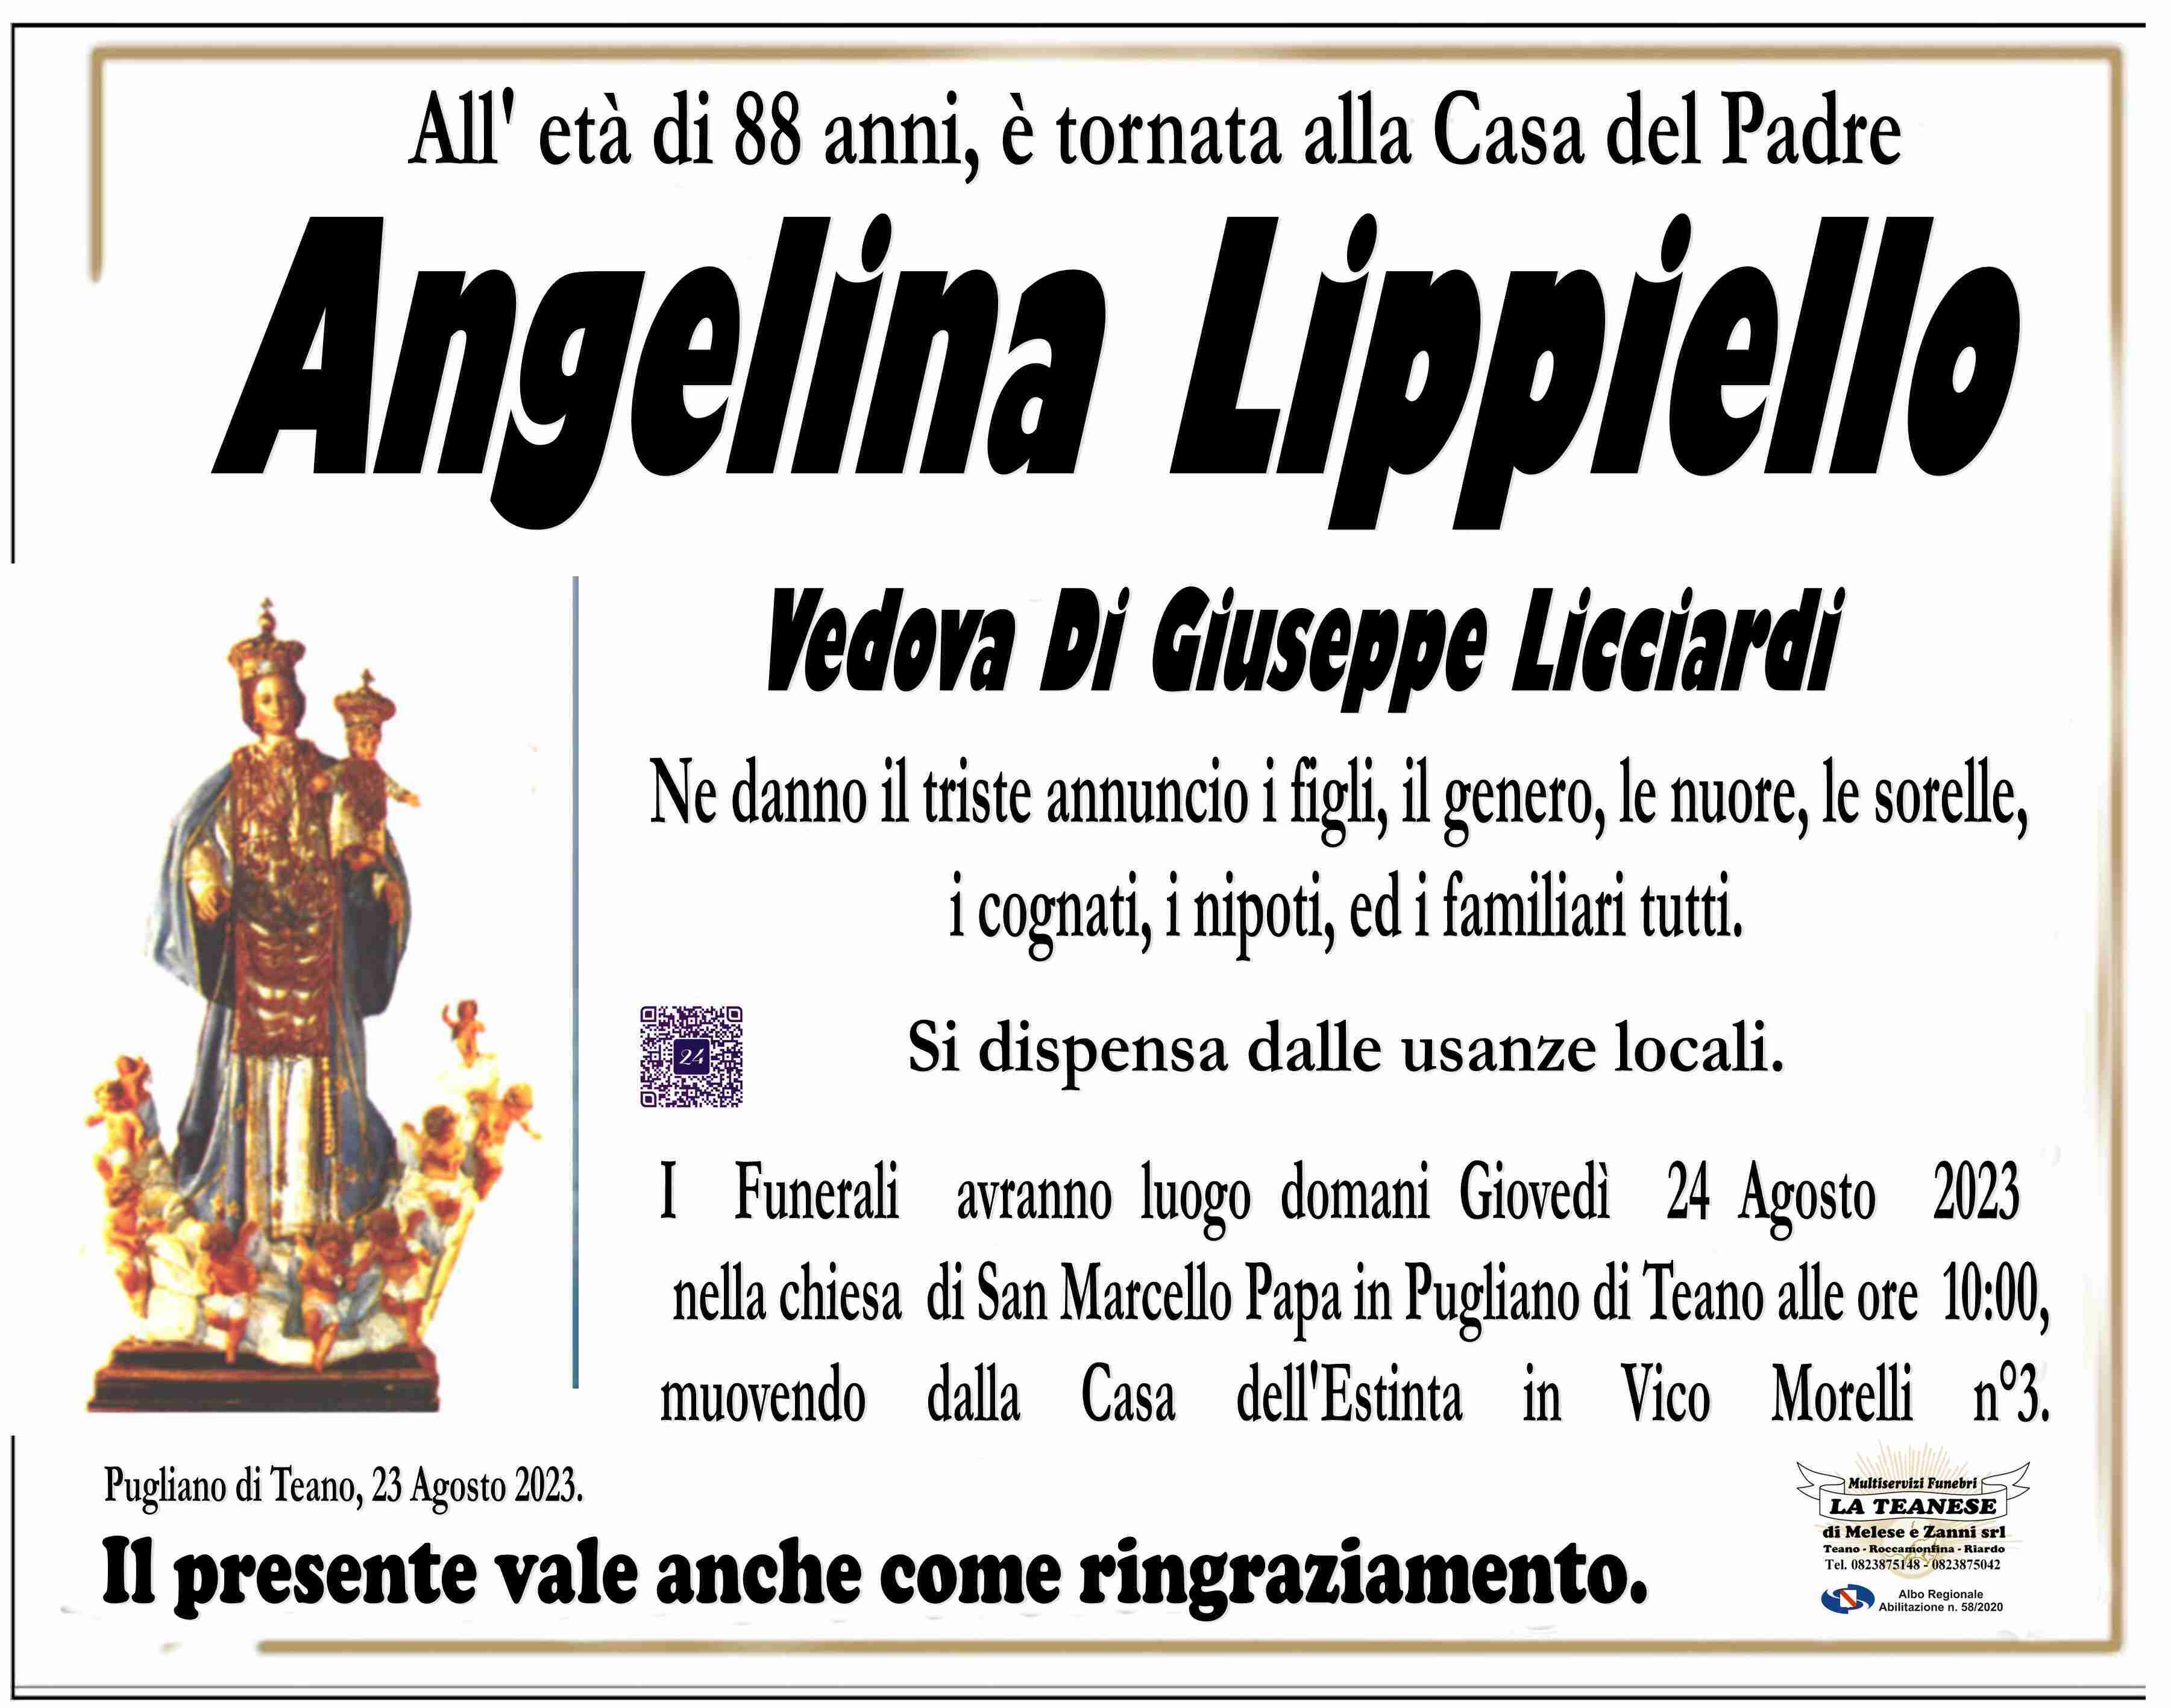 Angelina Lippiello